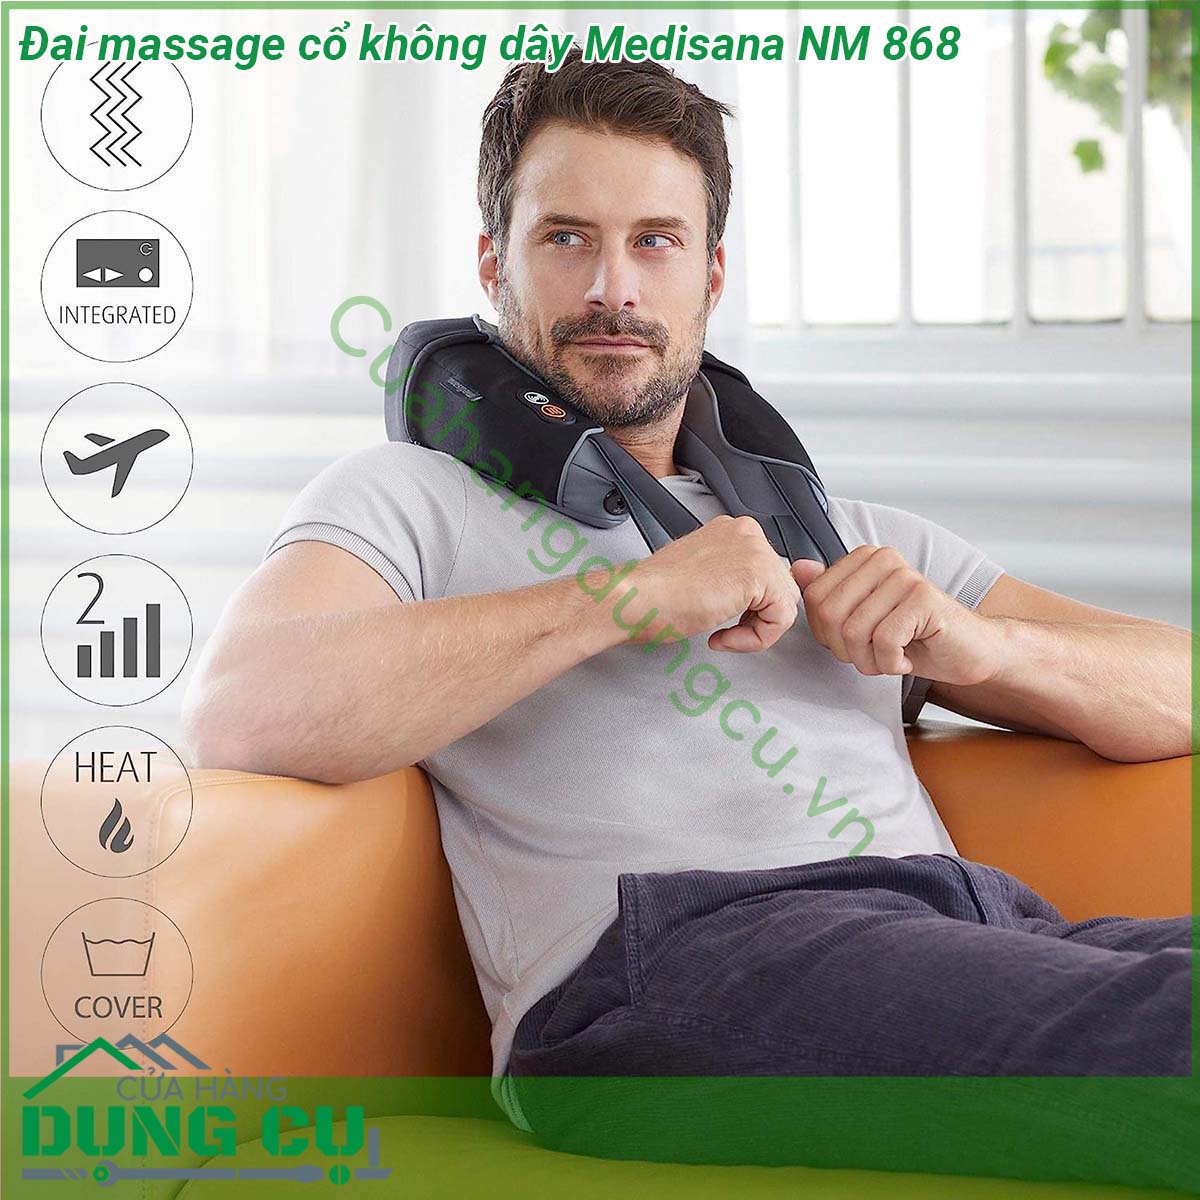 Đai massage cổ không dây Medisana NM 868 có thiết kế đơn giản  vận hành rất nhẹ nhàng và chính xác trên các vùng cơ căng thẳng của cơ thể giúp thư giãn Medisana NM 868 có thể sử dụng với cả nguồn điện và chạy bằng pin tích hợp bảng điều khiển giúp vận hành đơn giản nhỏ gọn không giây